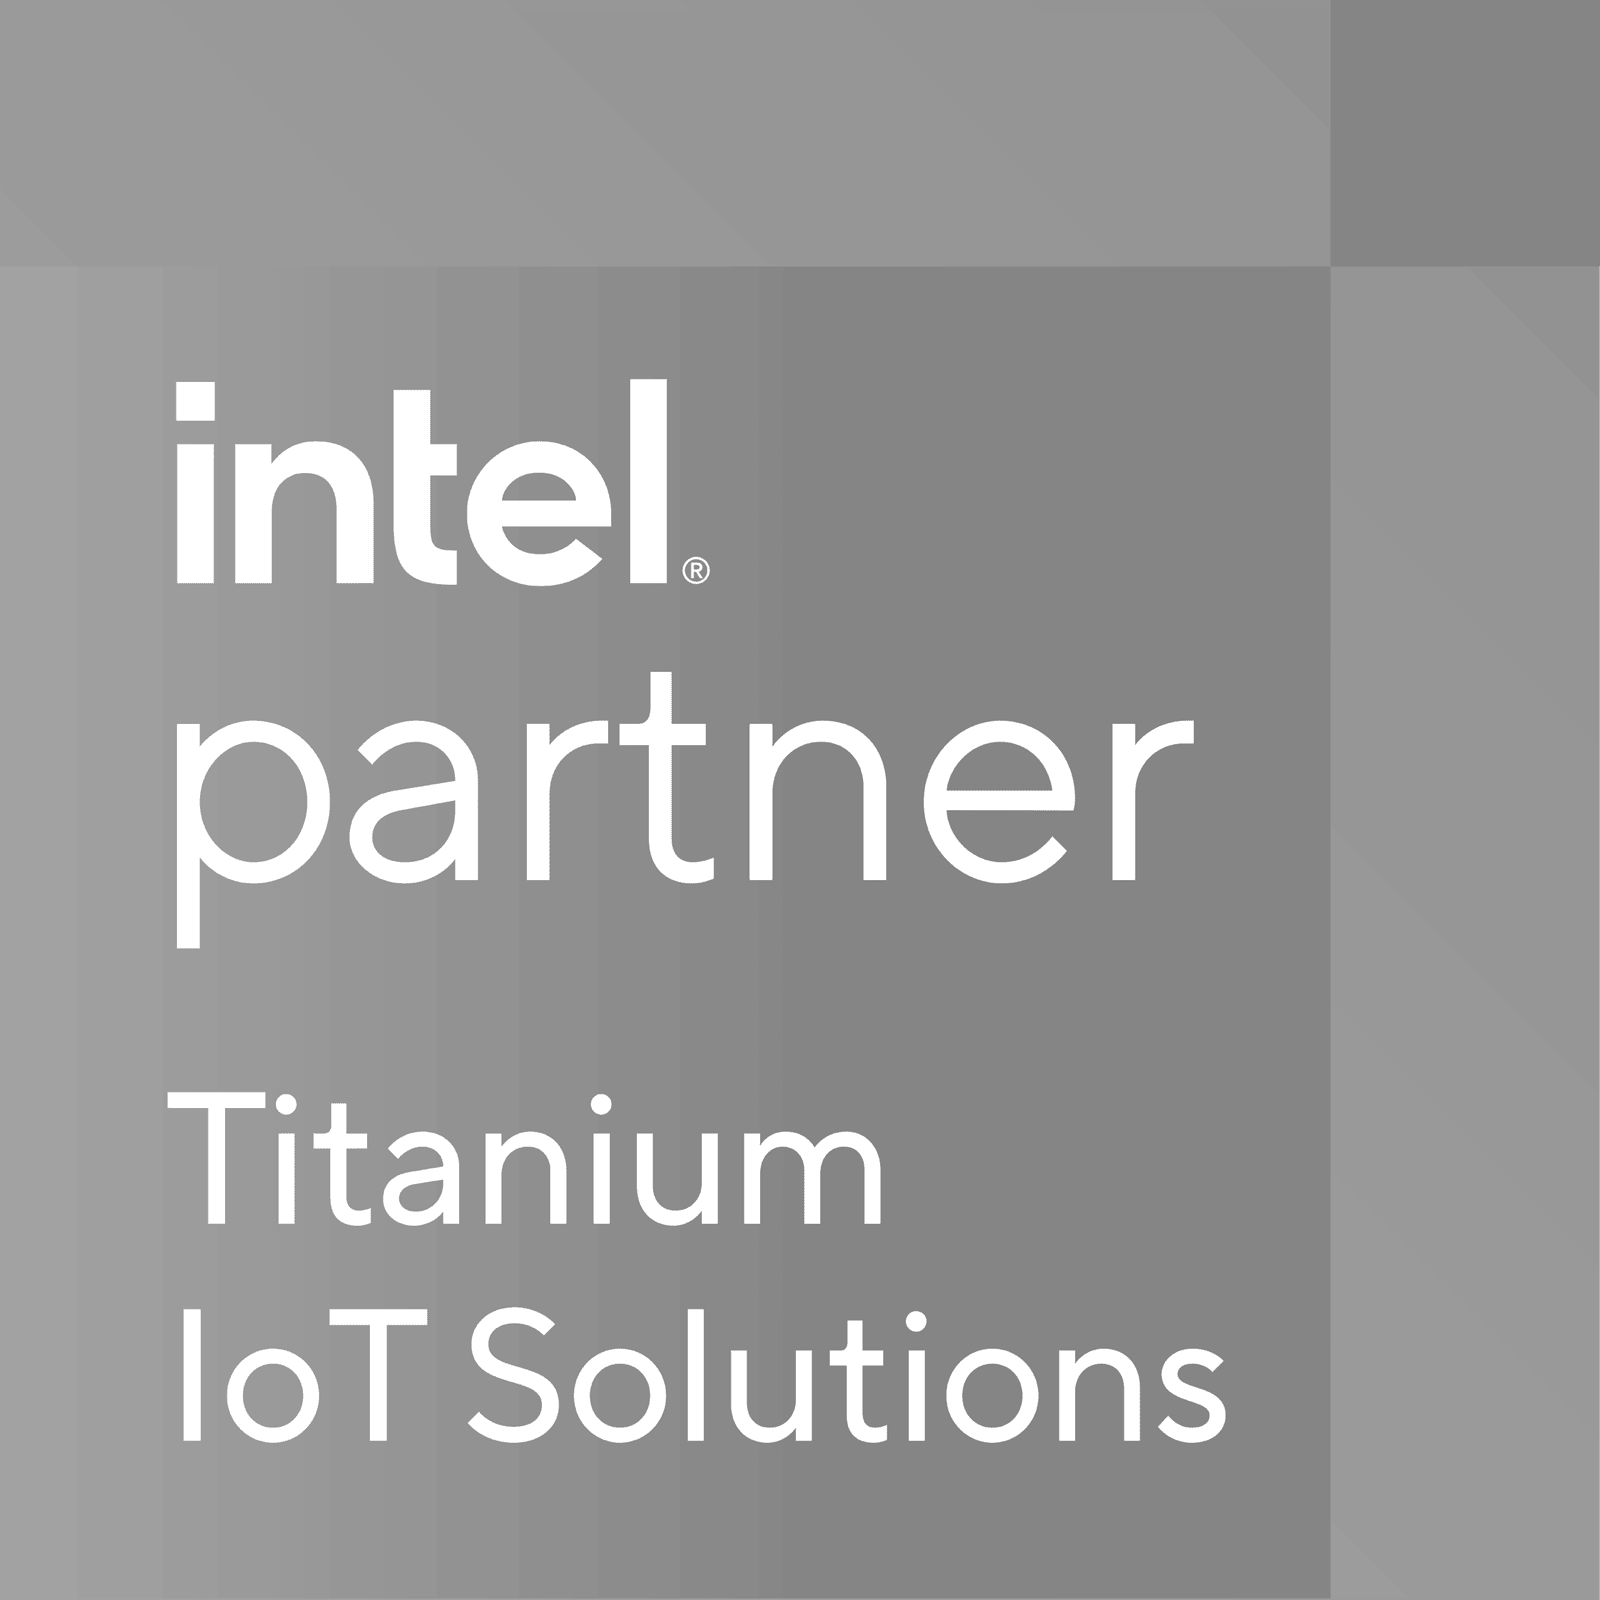 Intel Partner Alliance - Titanium